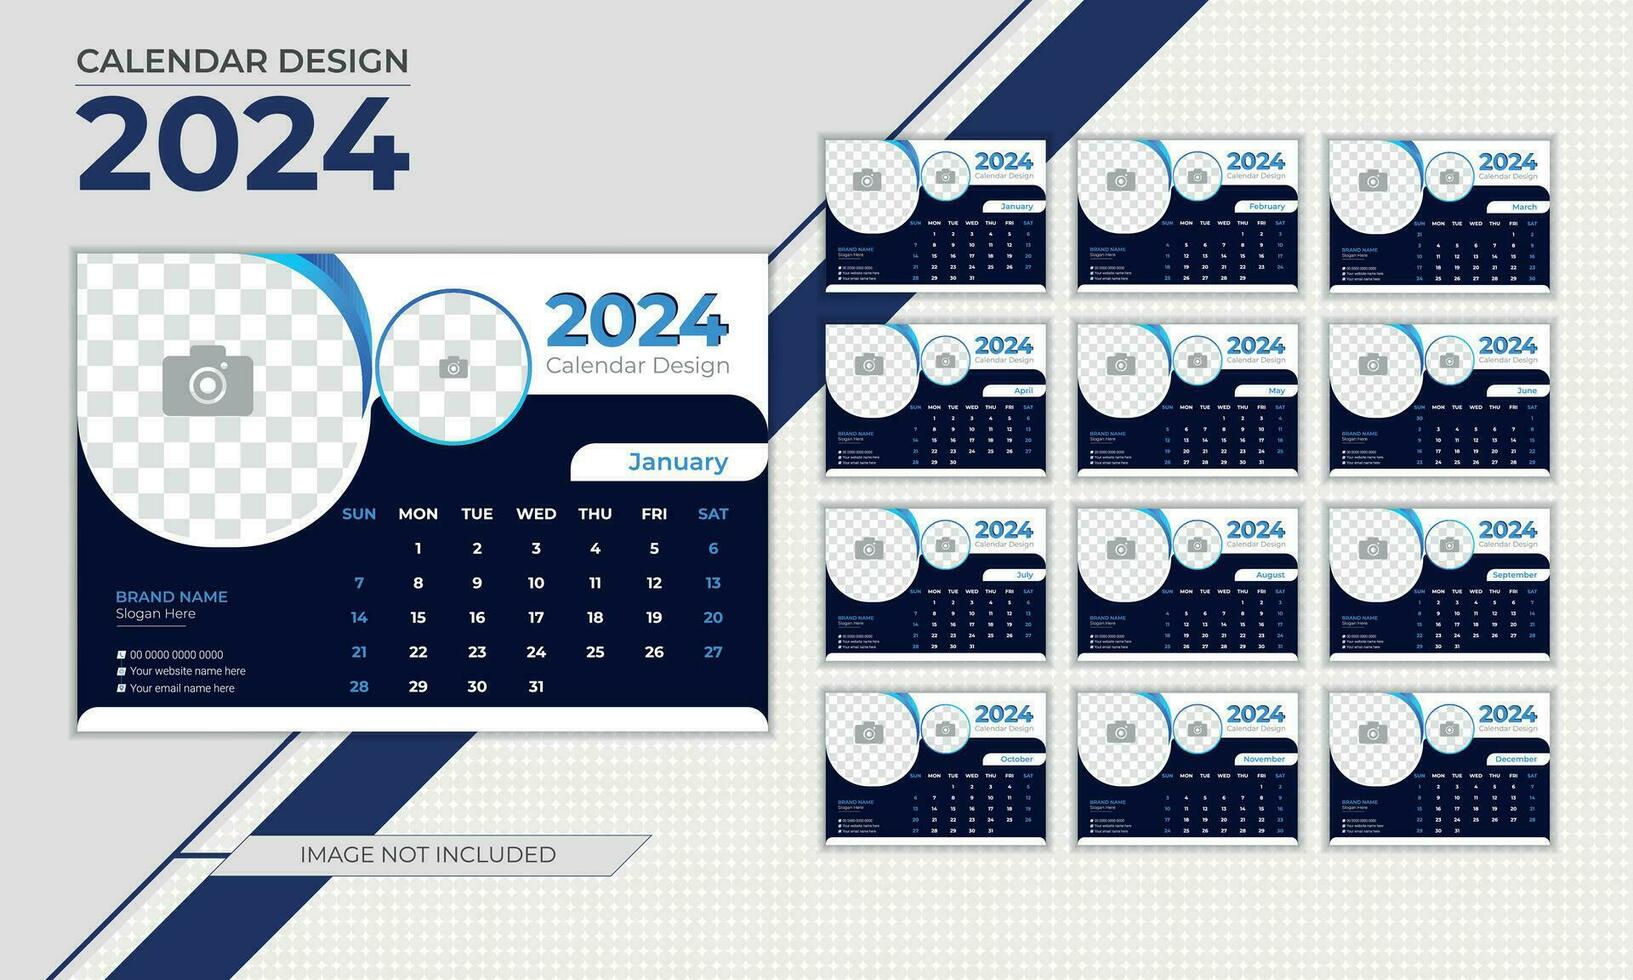 Calendar Design For 2024 vector